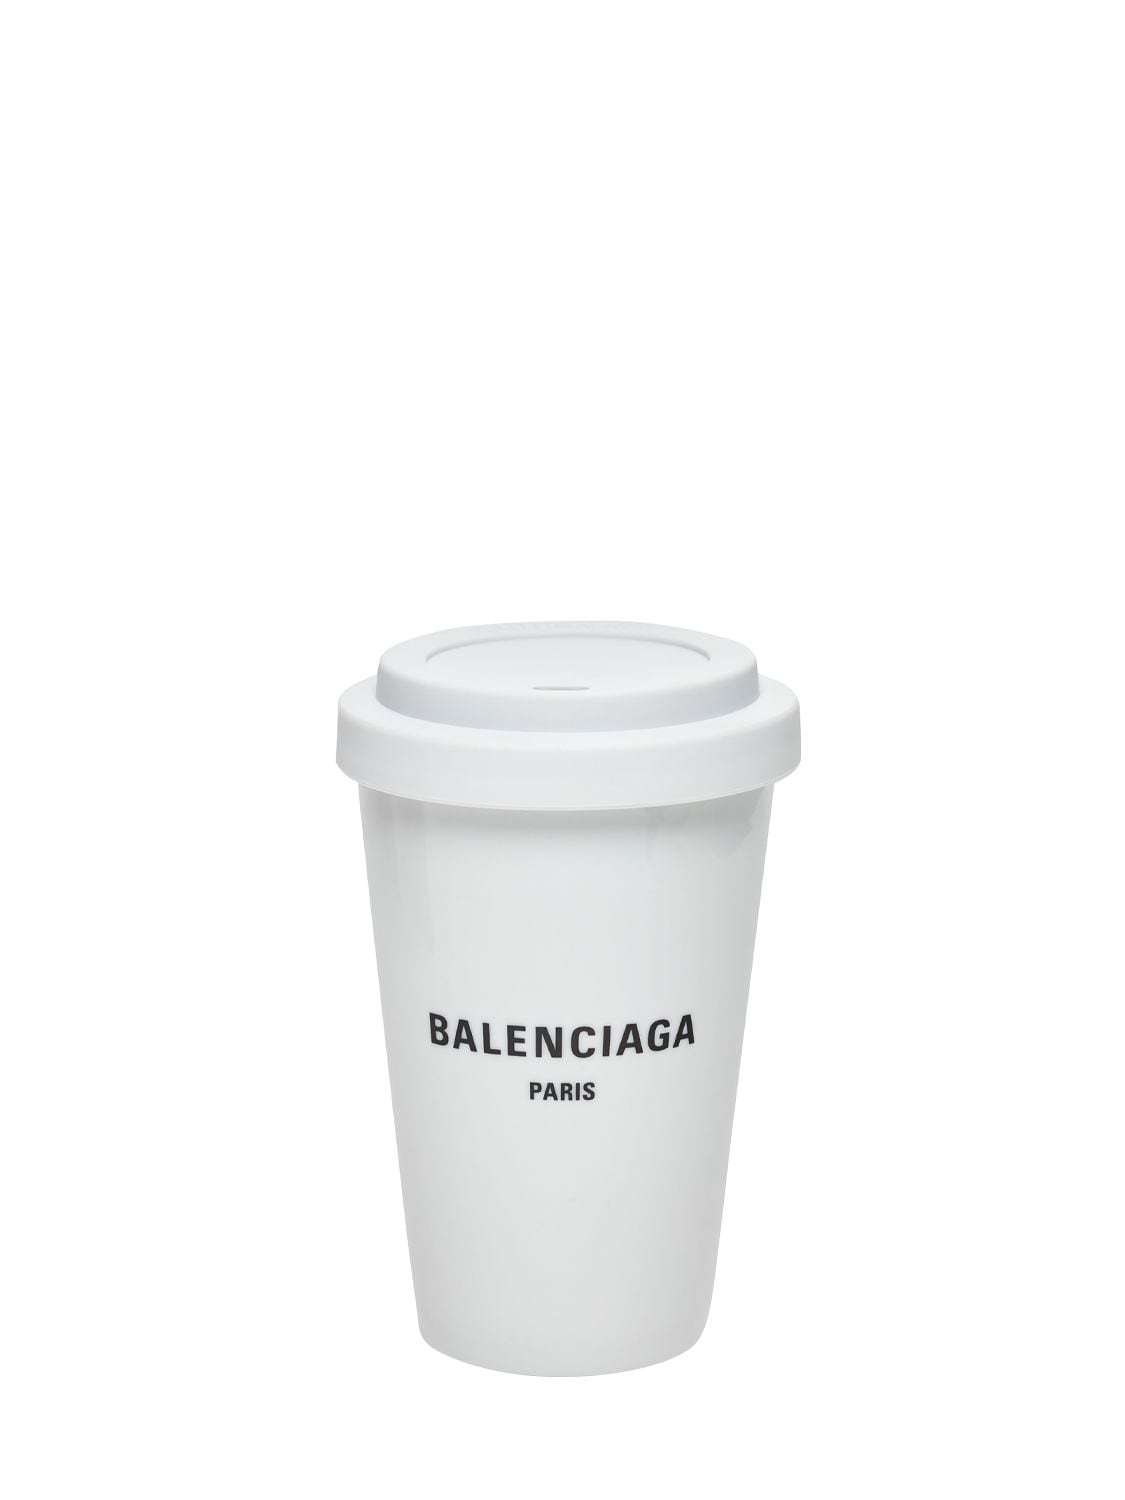 Balenciaga Paris Porcelain Coffee Cup In White